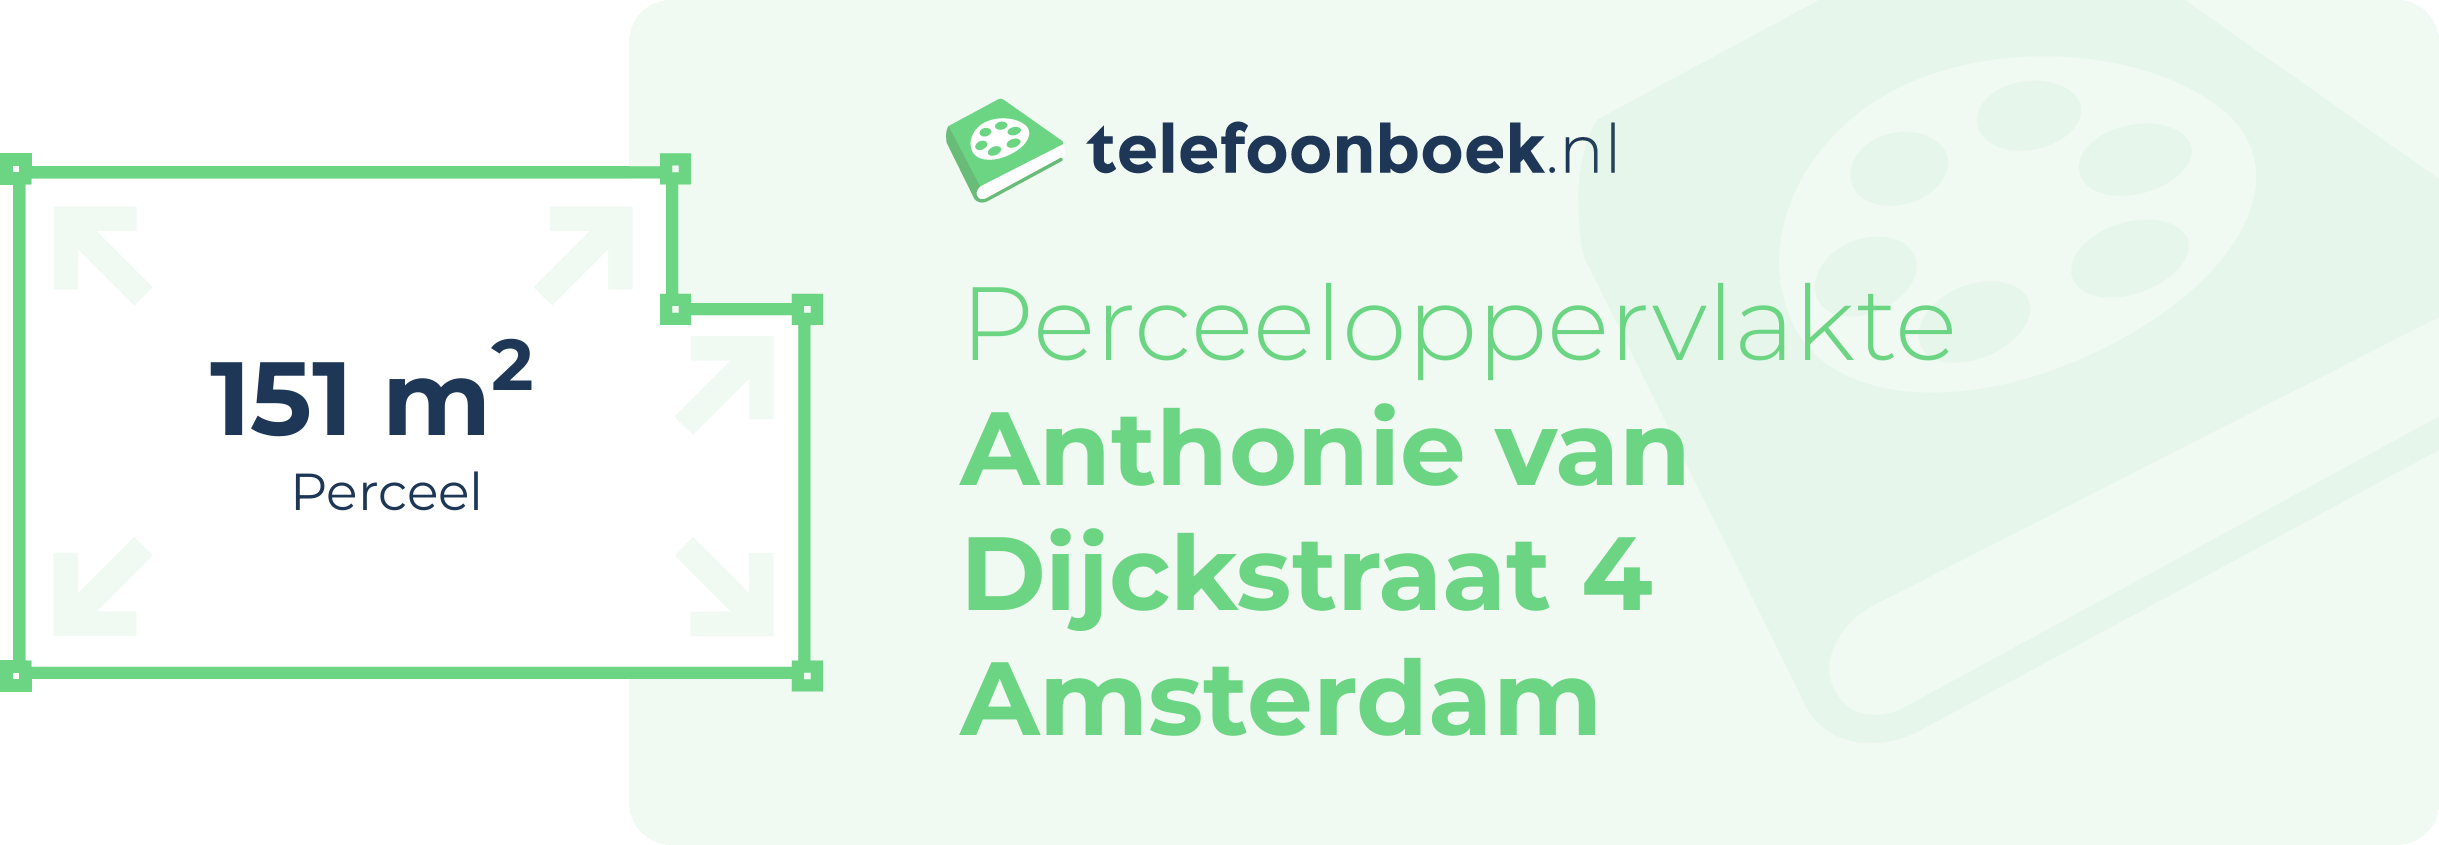 Perceeloppervlakte Anthonie Van Dijckstraat 4 Amsterdam